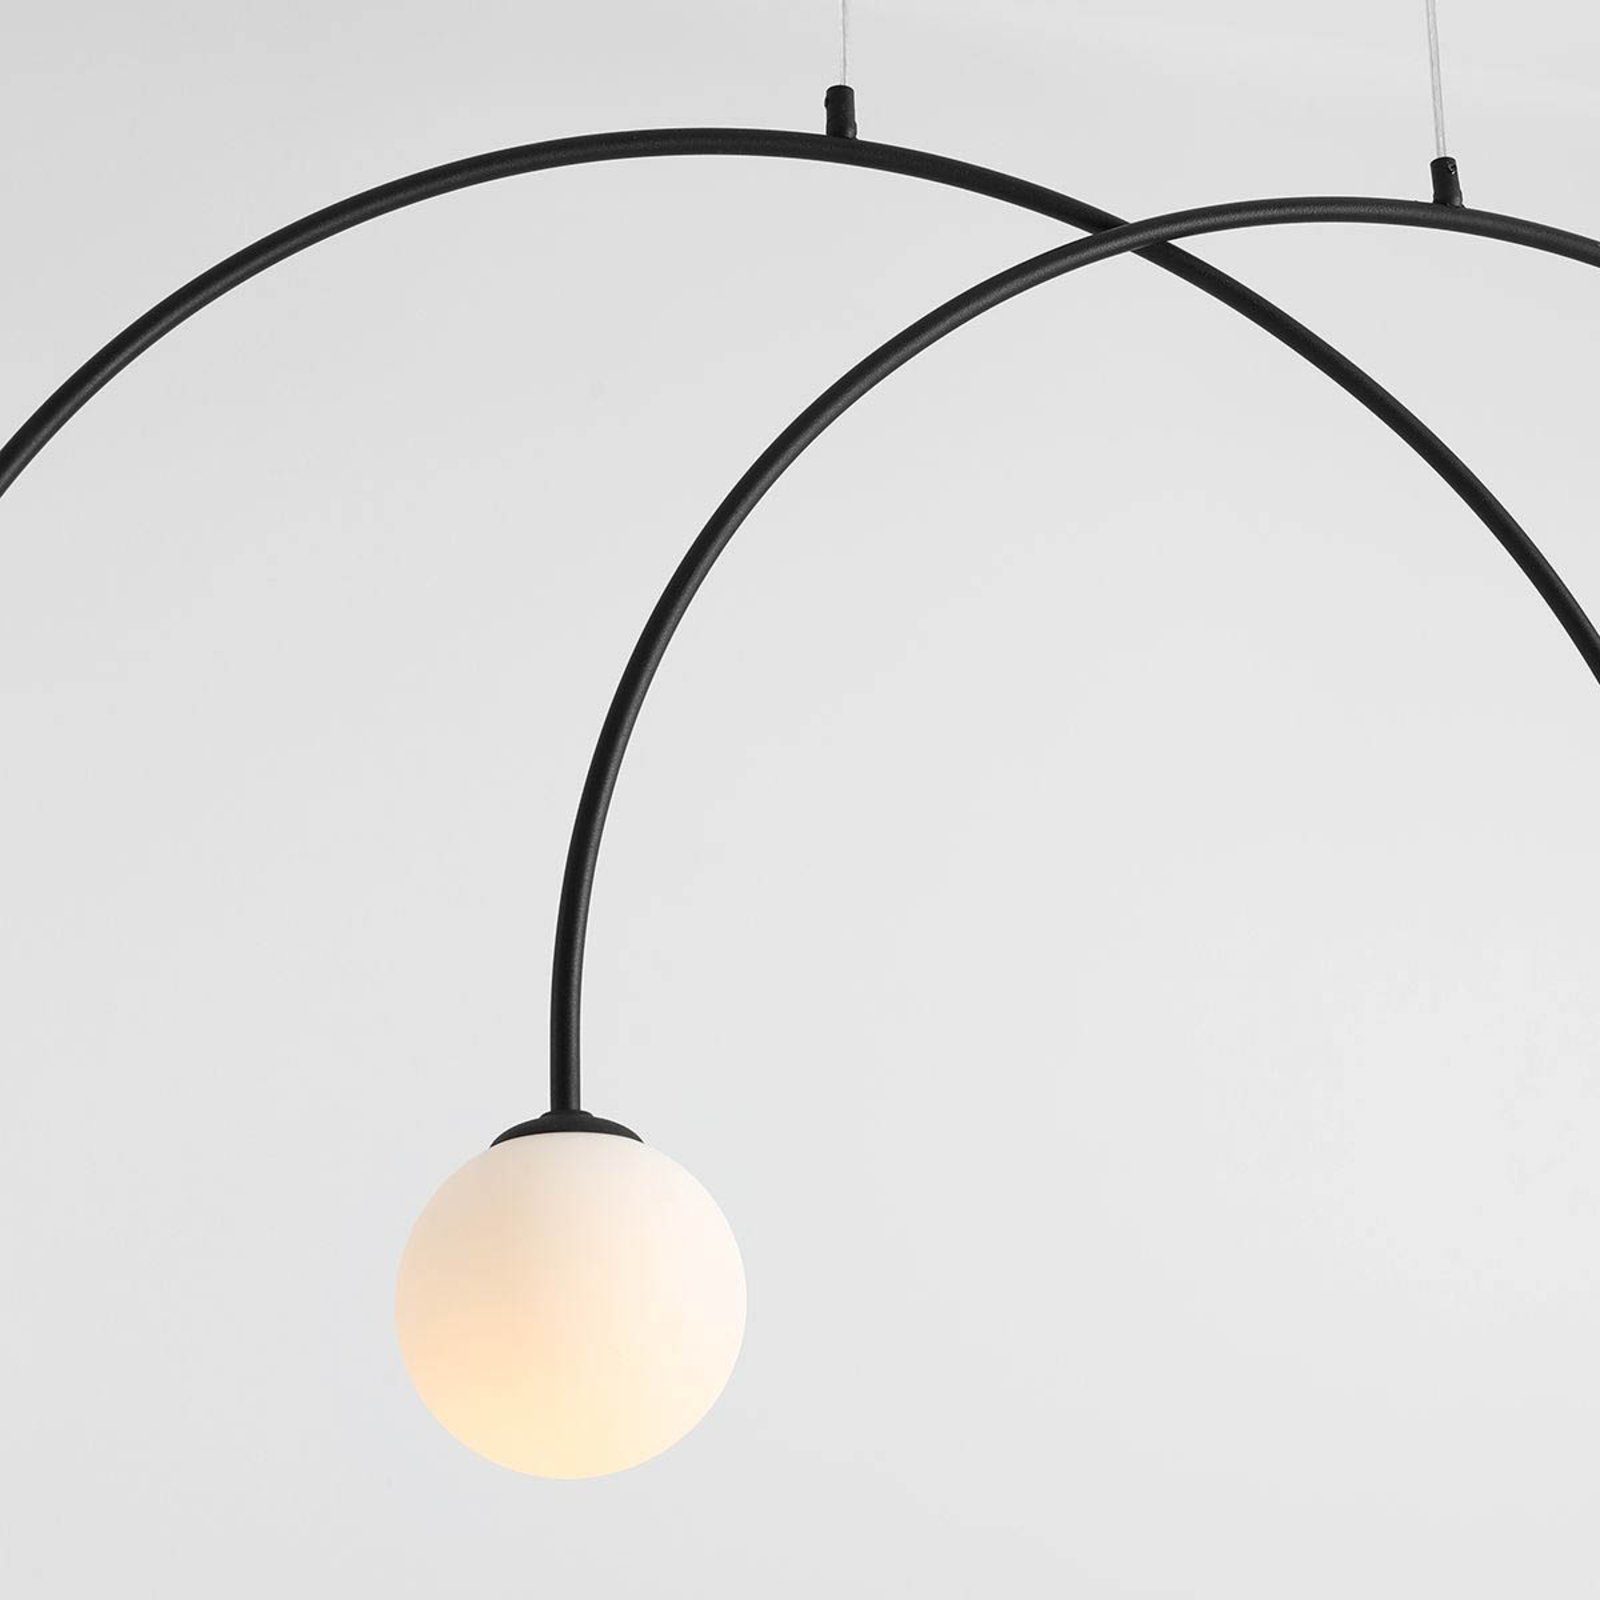 Hanglamp Alison, zwart/wit, 4-lamps, boog, 129cm